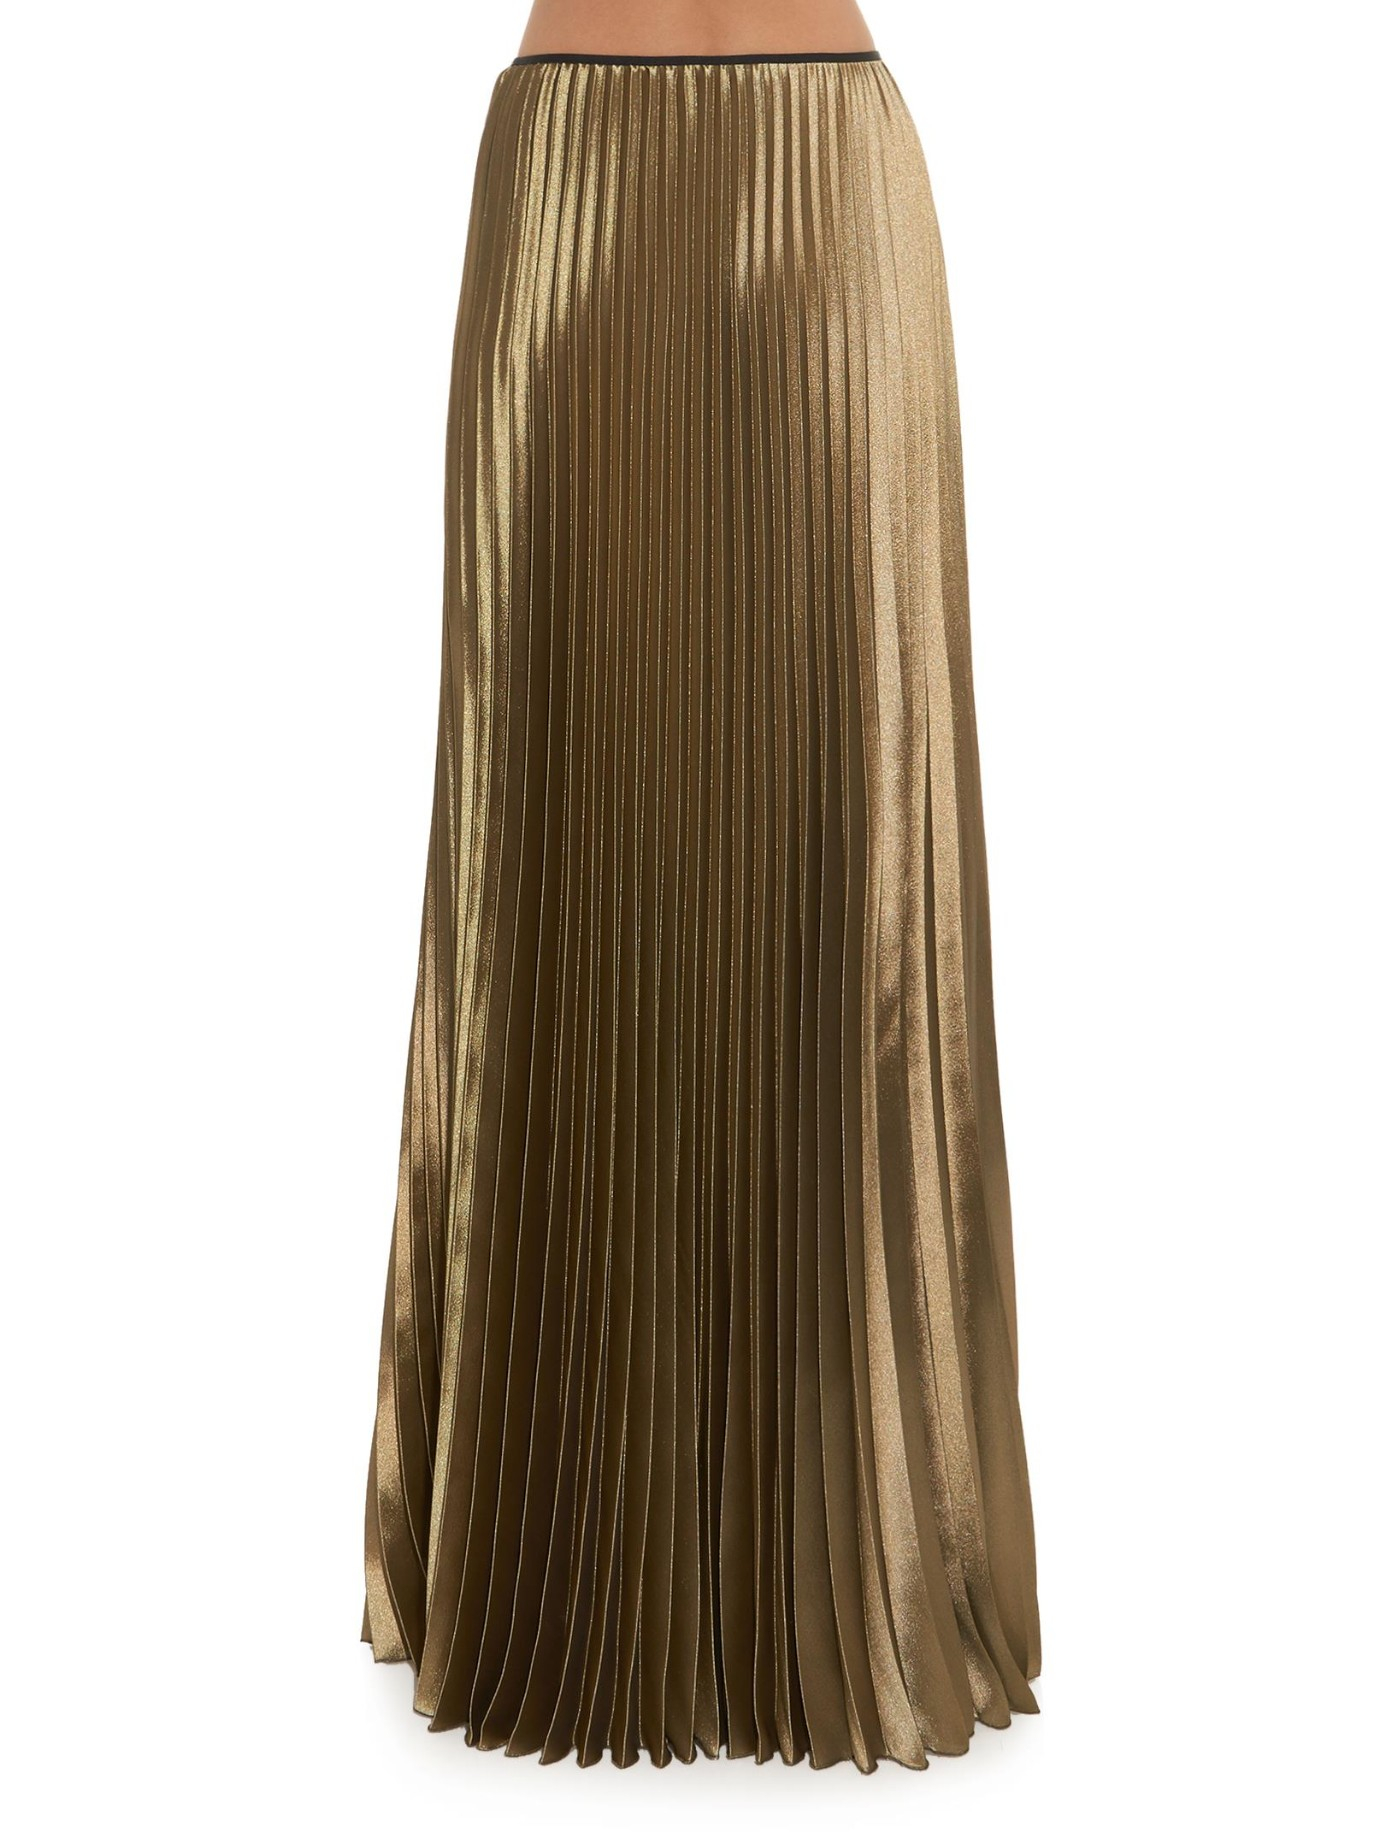 Long Gold Skirt 60